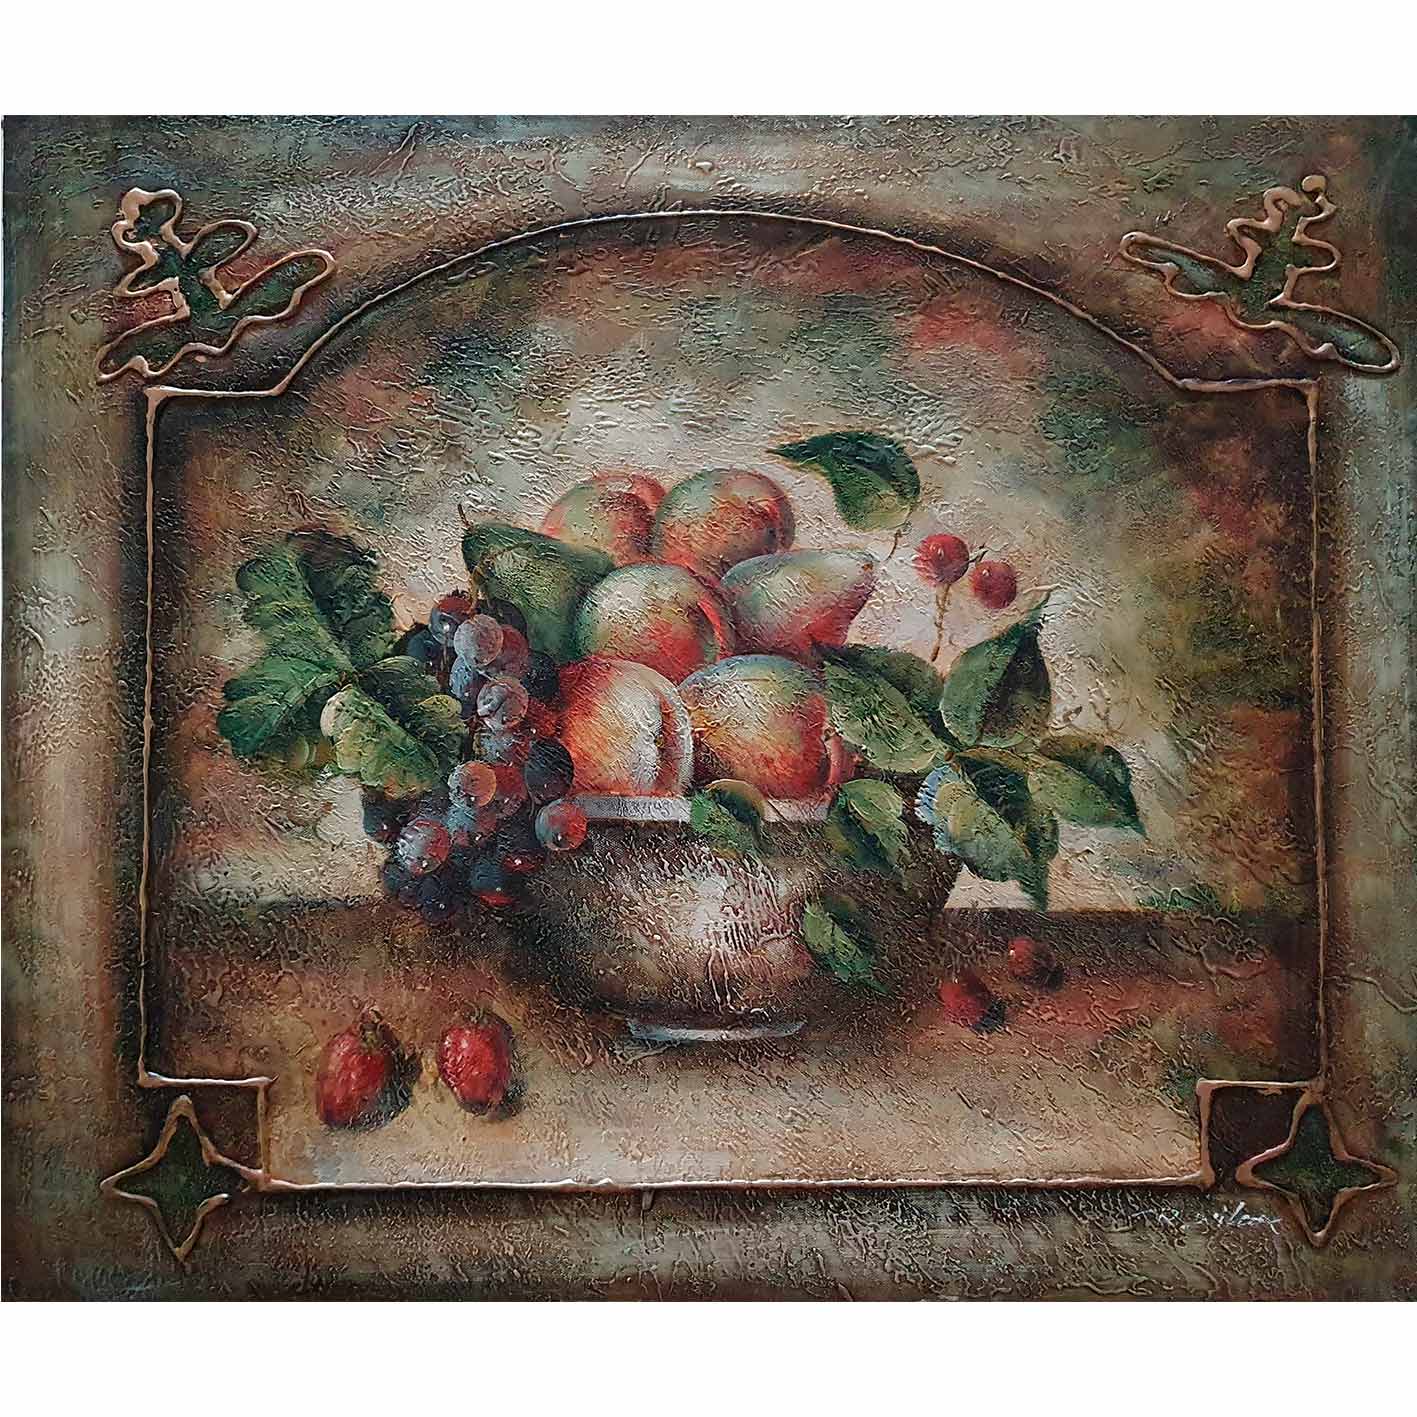 Fruchtstillleben Diptychon Gemälde 60x50 cm [2 Stück]